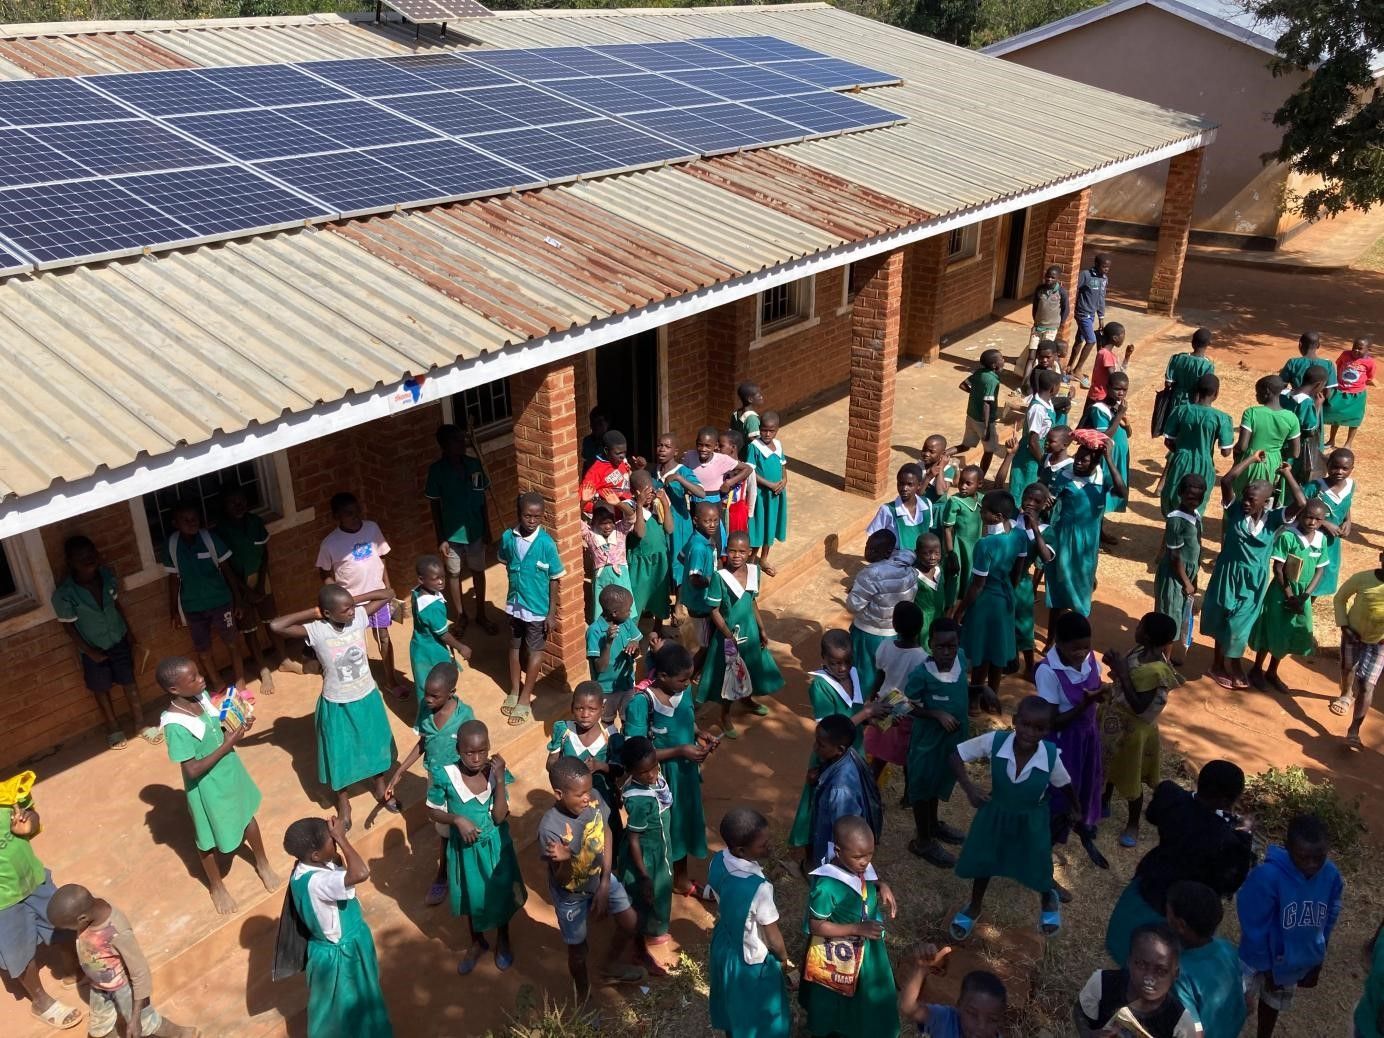 O projeto de energia fotovoltaica distribuída da LONGi doado à Escola Chamalire no Malawi, África, fornece aos alunos iluminação para estudo noturno e beneficia a comunidade local.